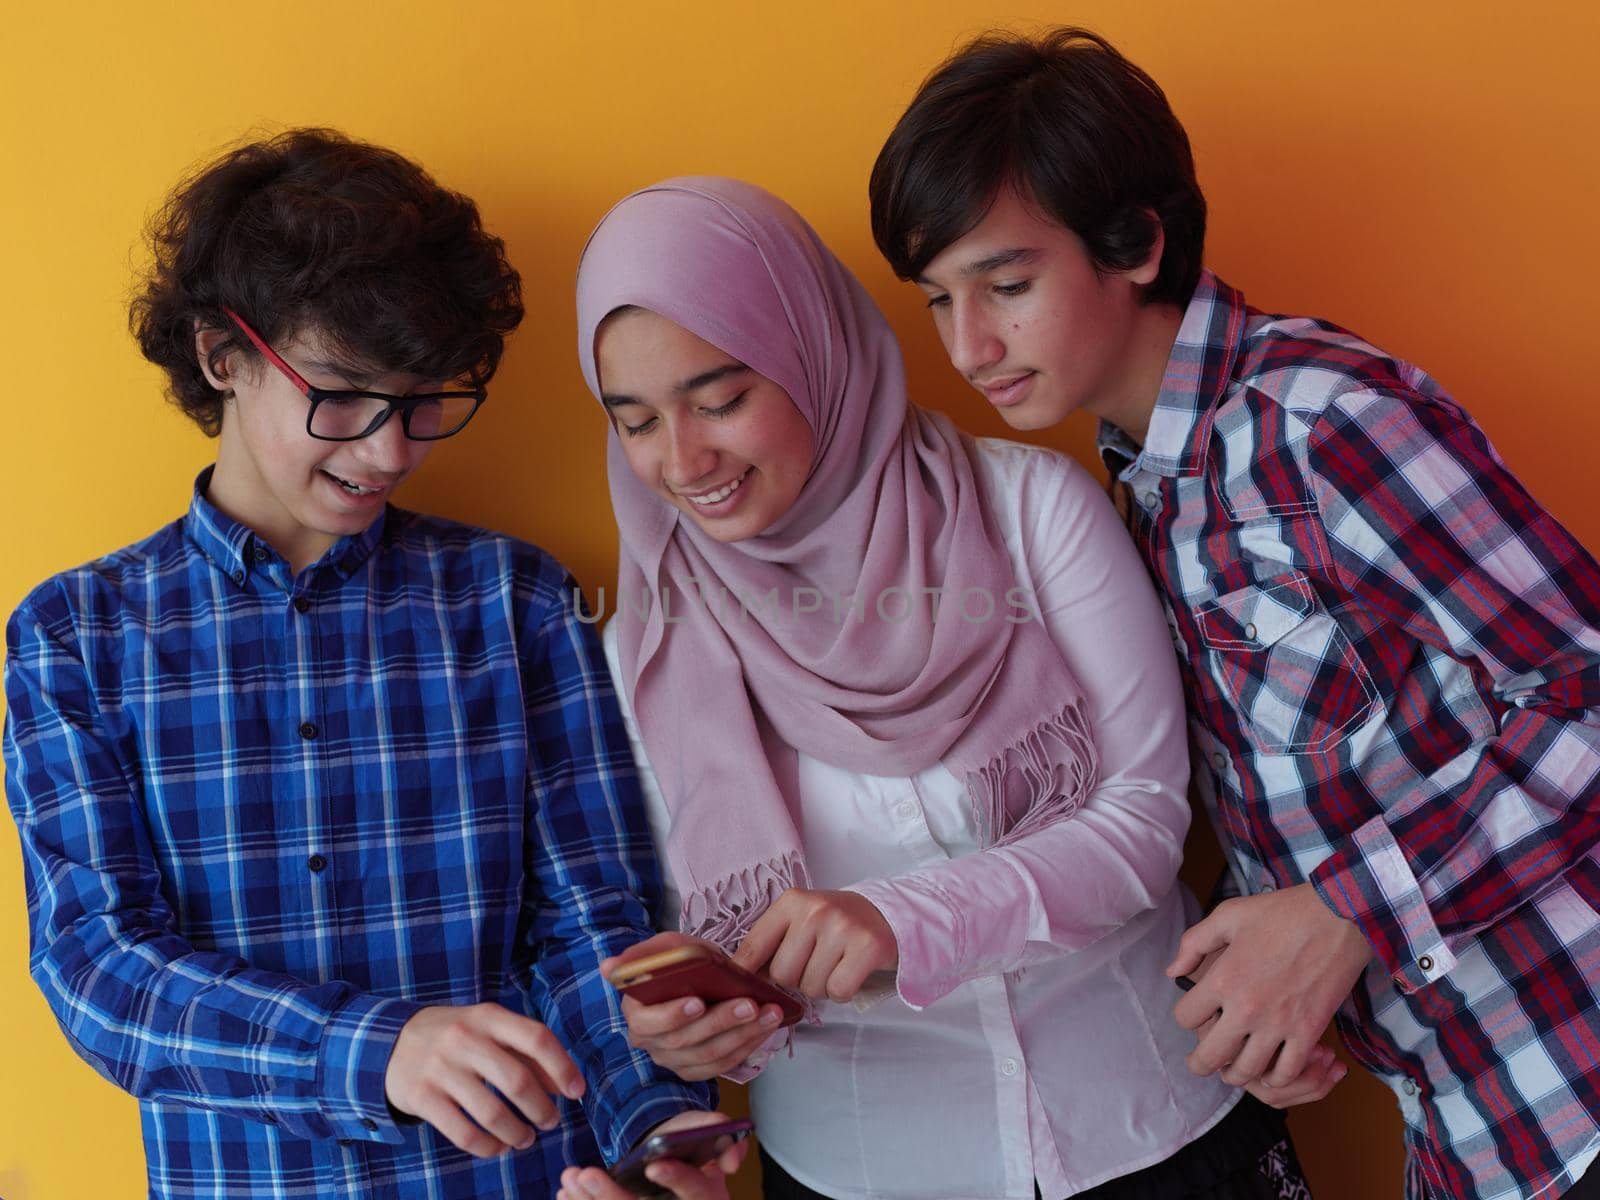 arab teenagers group using smart phones online education by dotshock